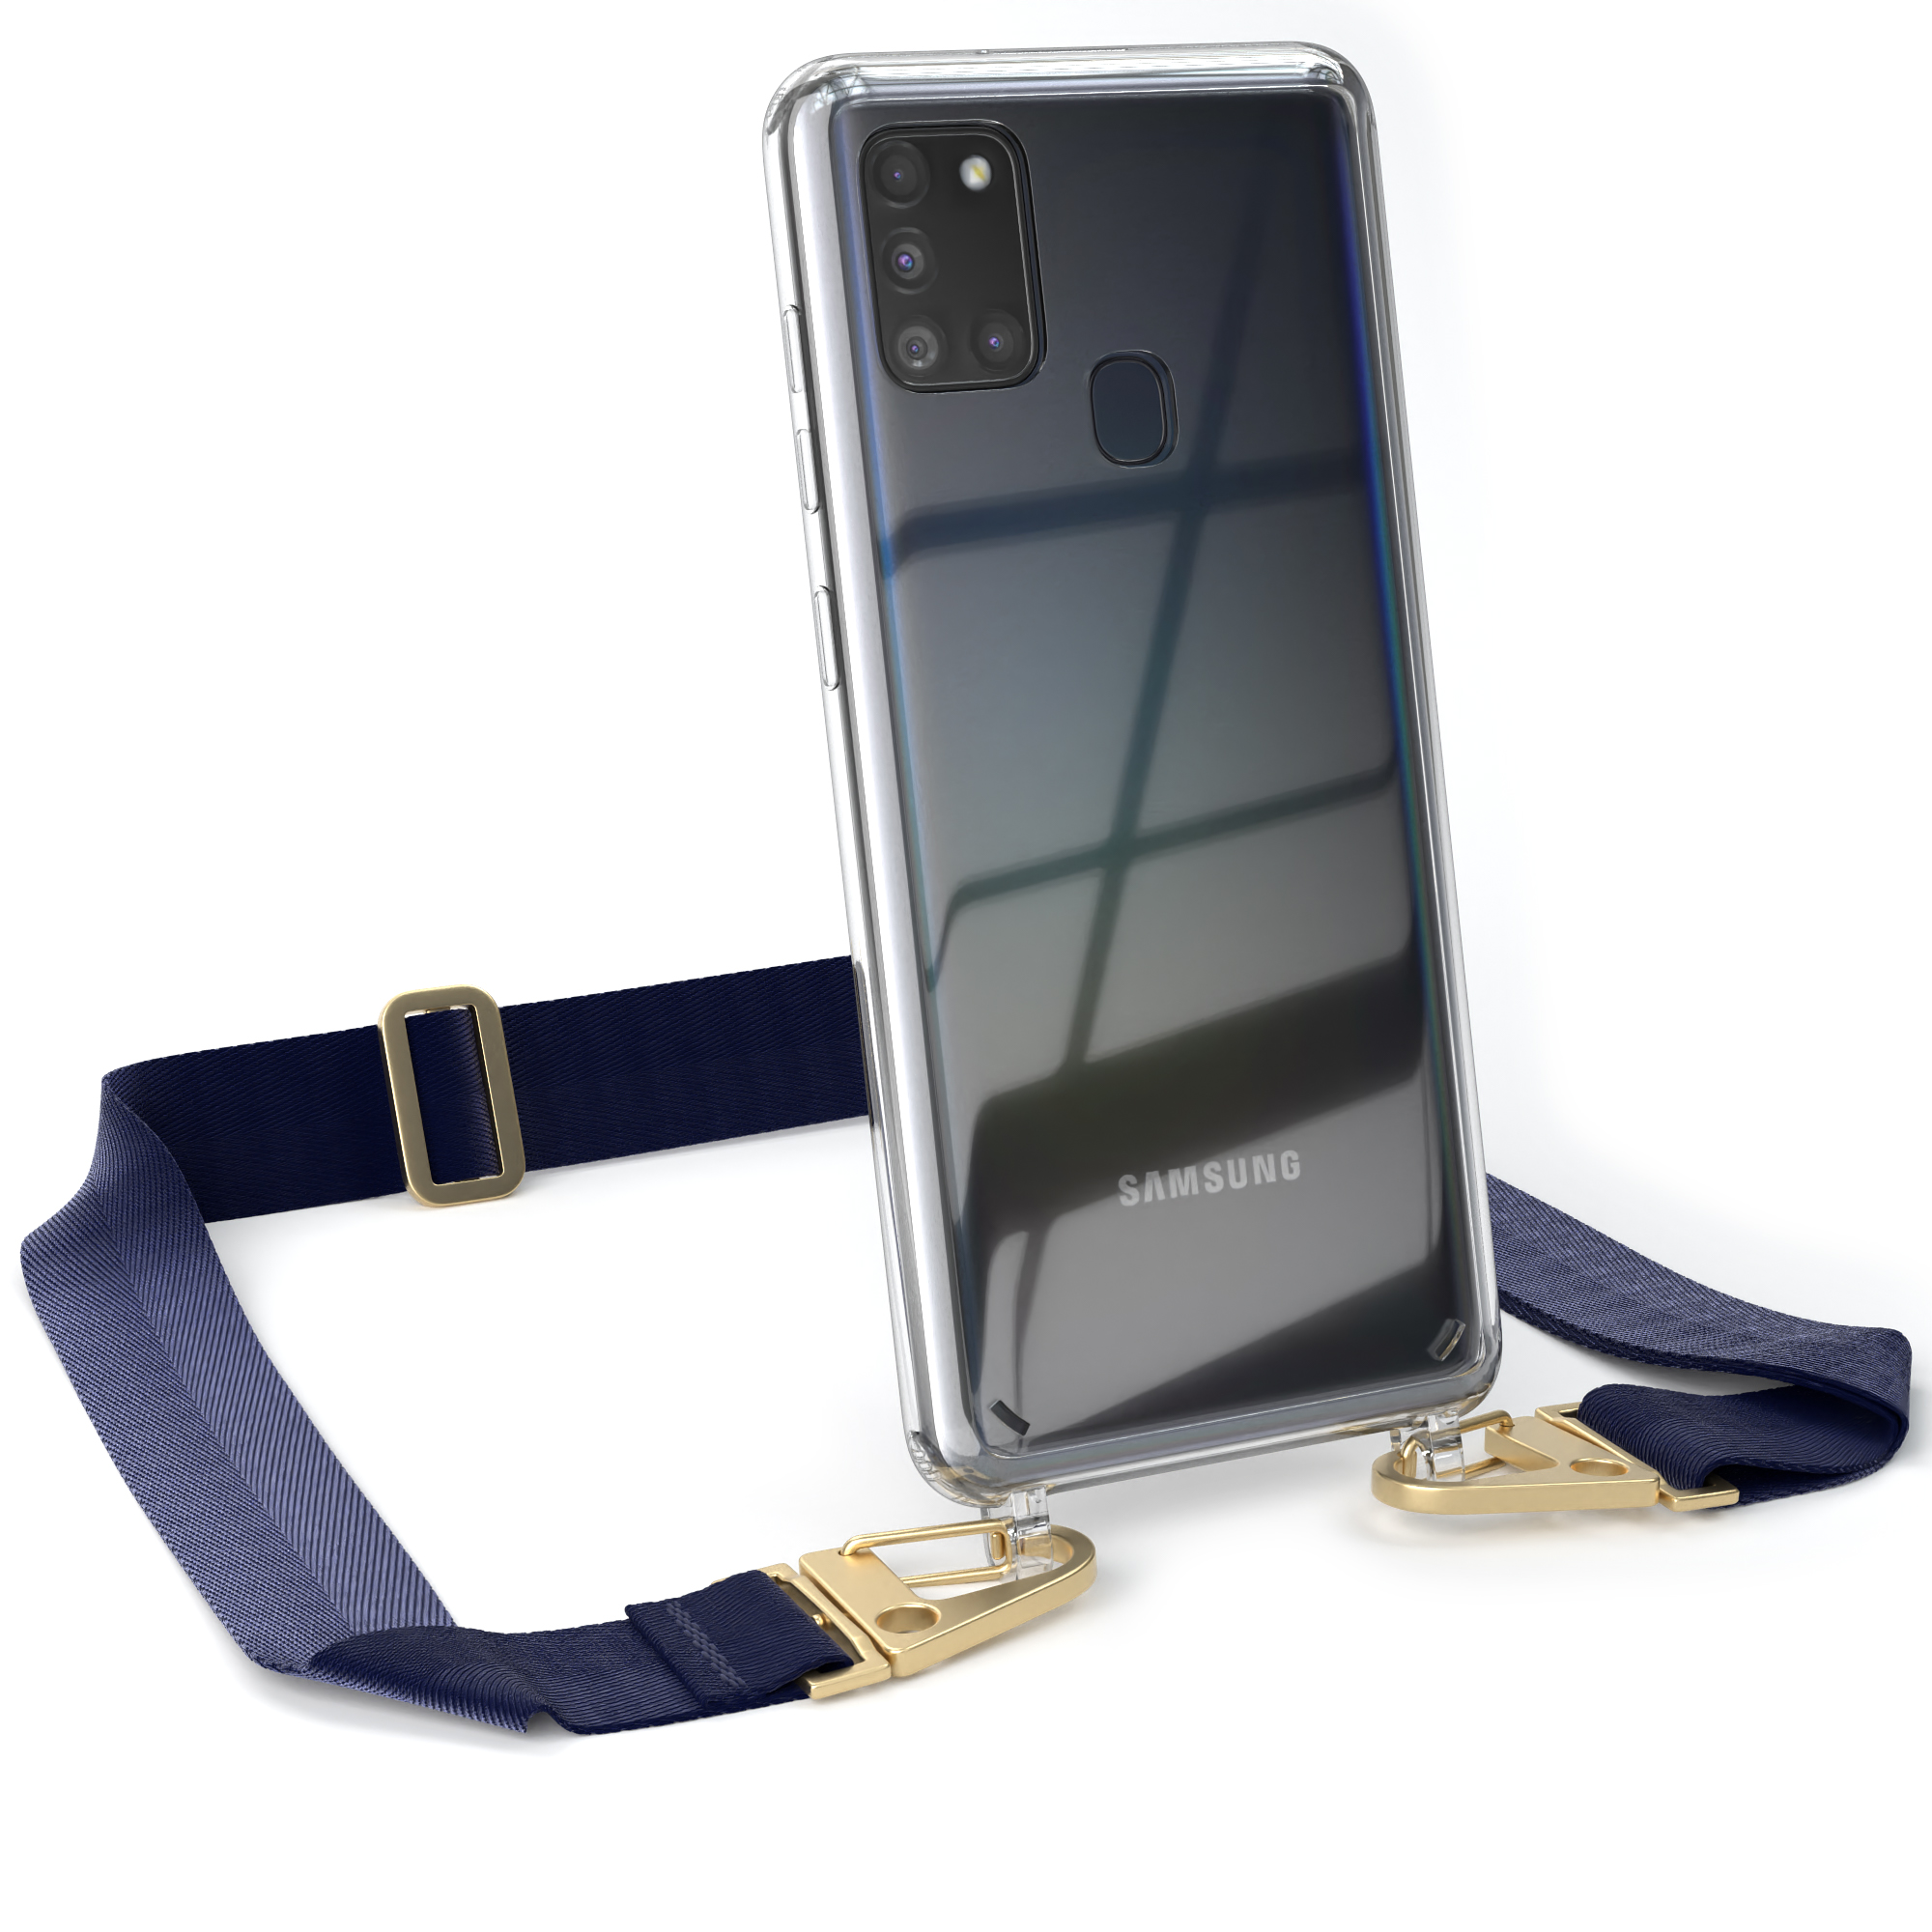 EAZY CASE Transparente Handyhülle mit breiter Umhängetasche, Galaxy Blau Gold A21s, Kordel / + Karabiner, Samsung, Dunkel